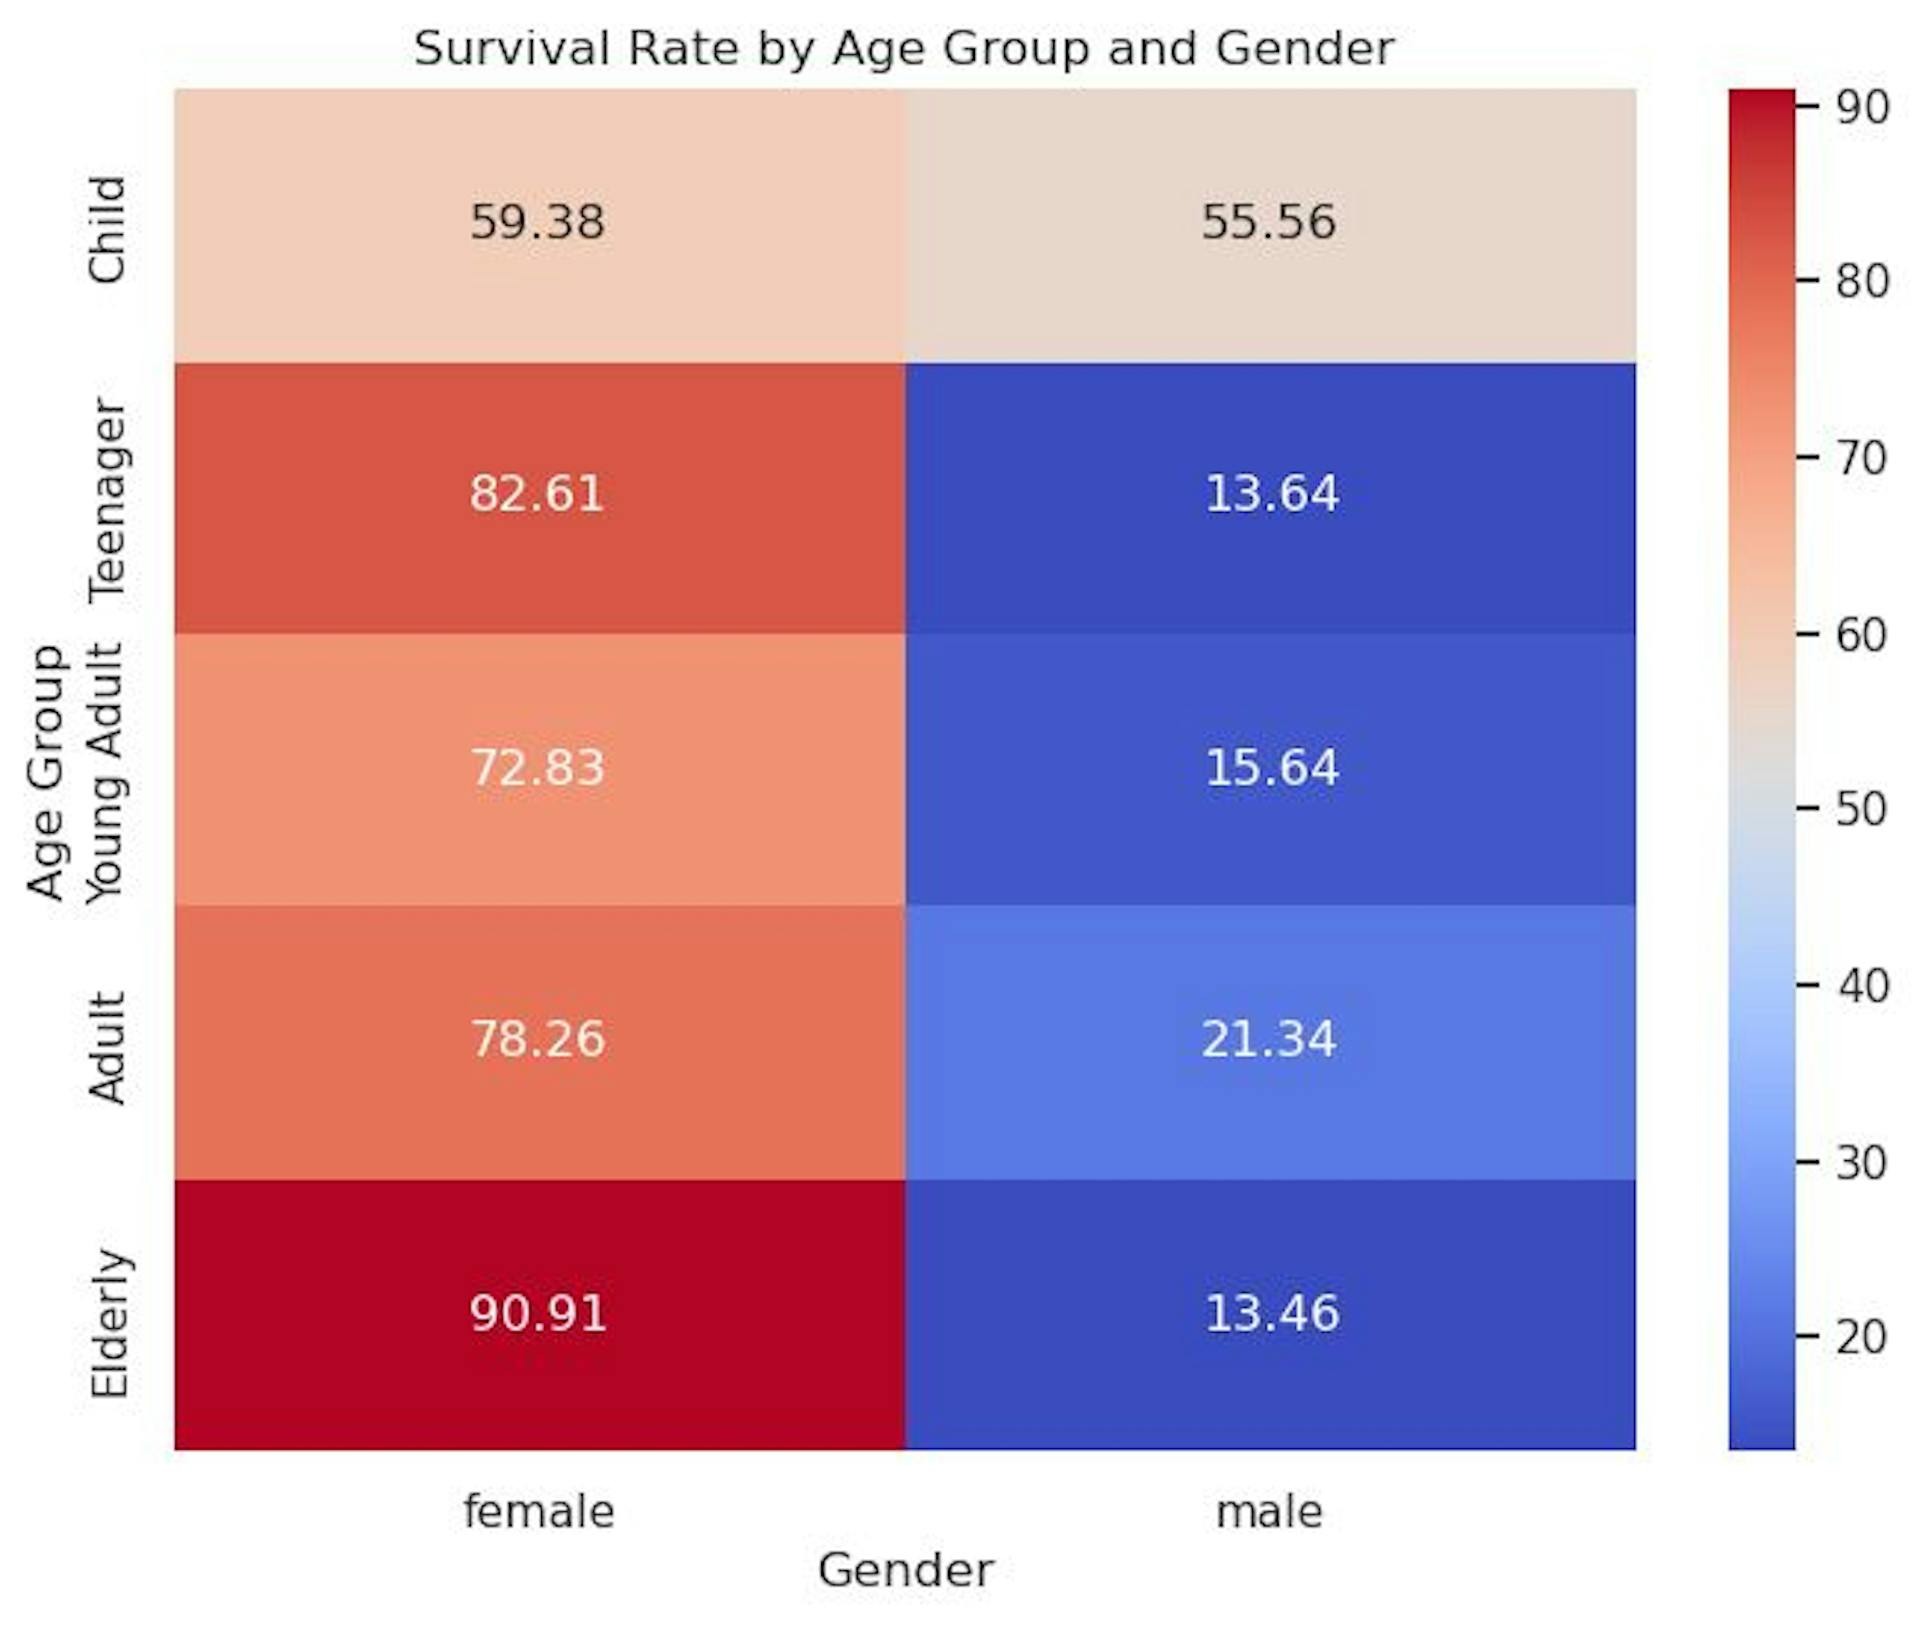 tỷ lệ sống thêm theo nhóm tuổi và giới tính